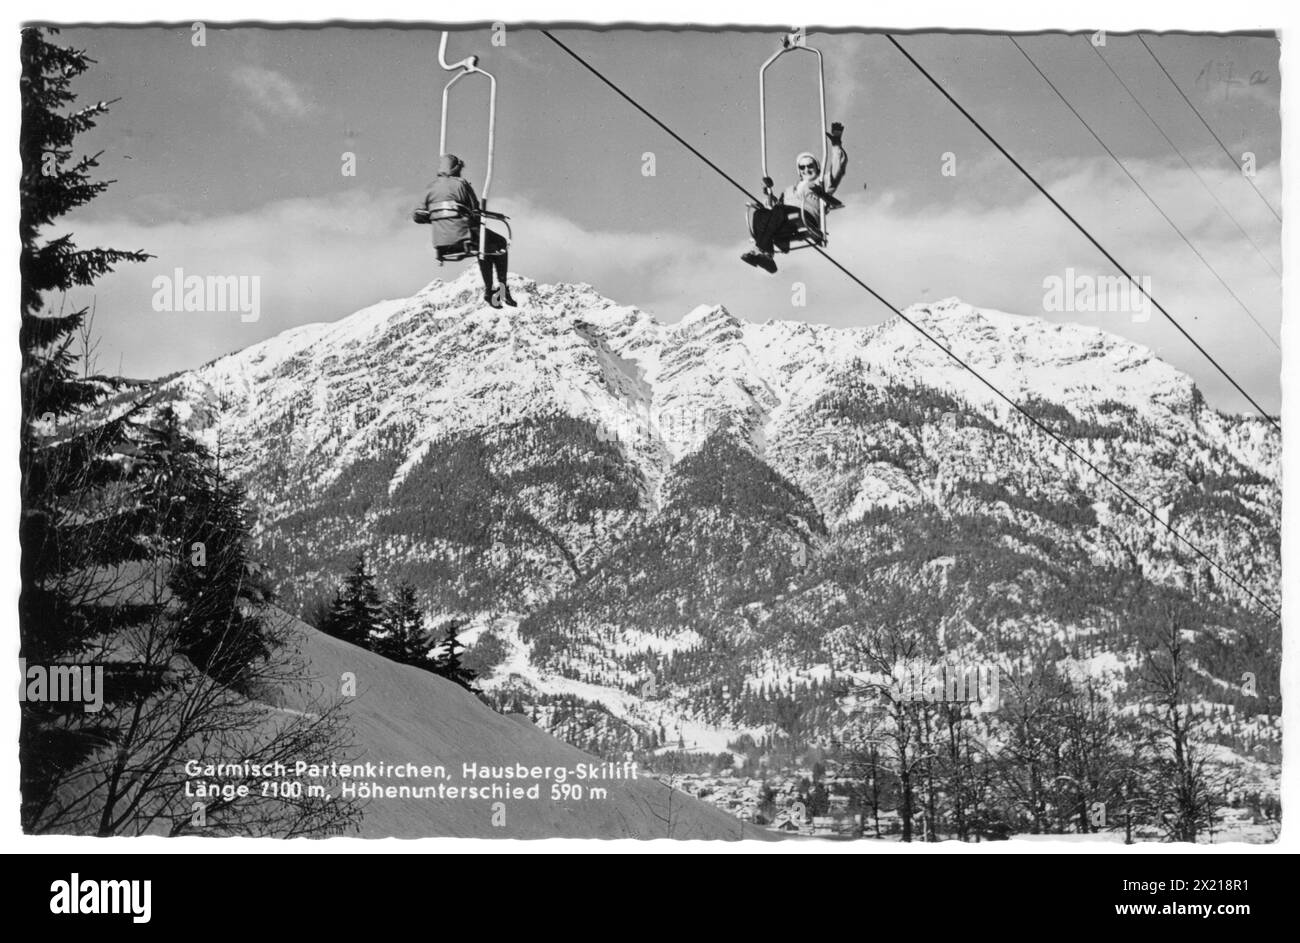 Geografia / viaggi, Germania, città e comunità, Garmisch-Partenkirchen, skilift per Hausberg, ULTERIORI DIRITTI-CLEARANCE-INFO-NOT-AVAILABLE Foto Stock